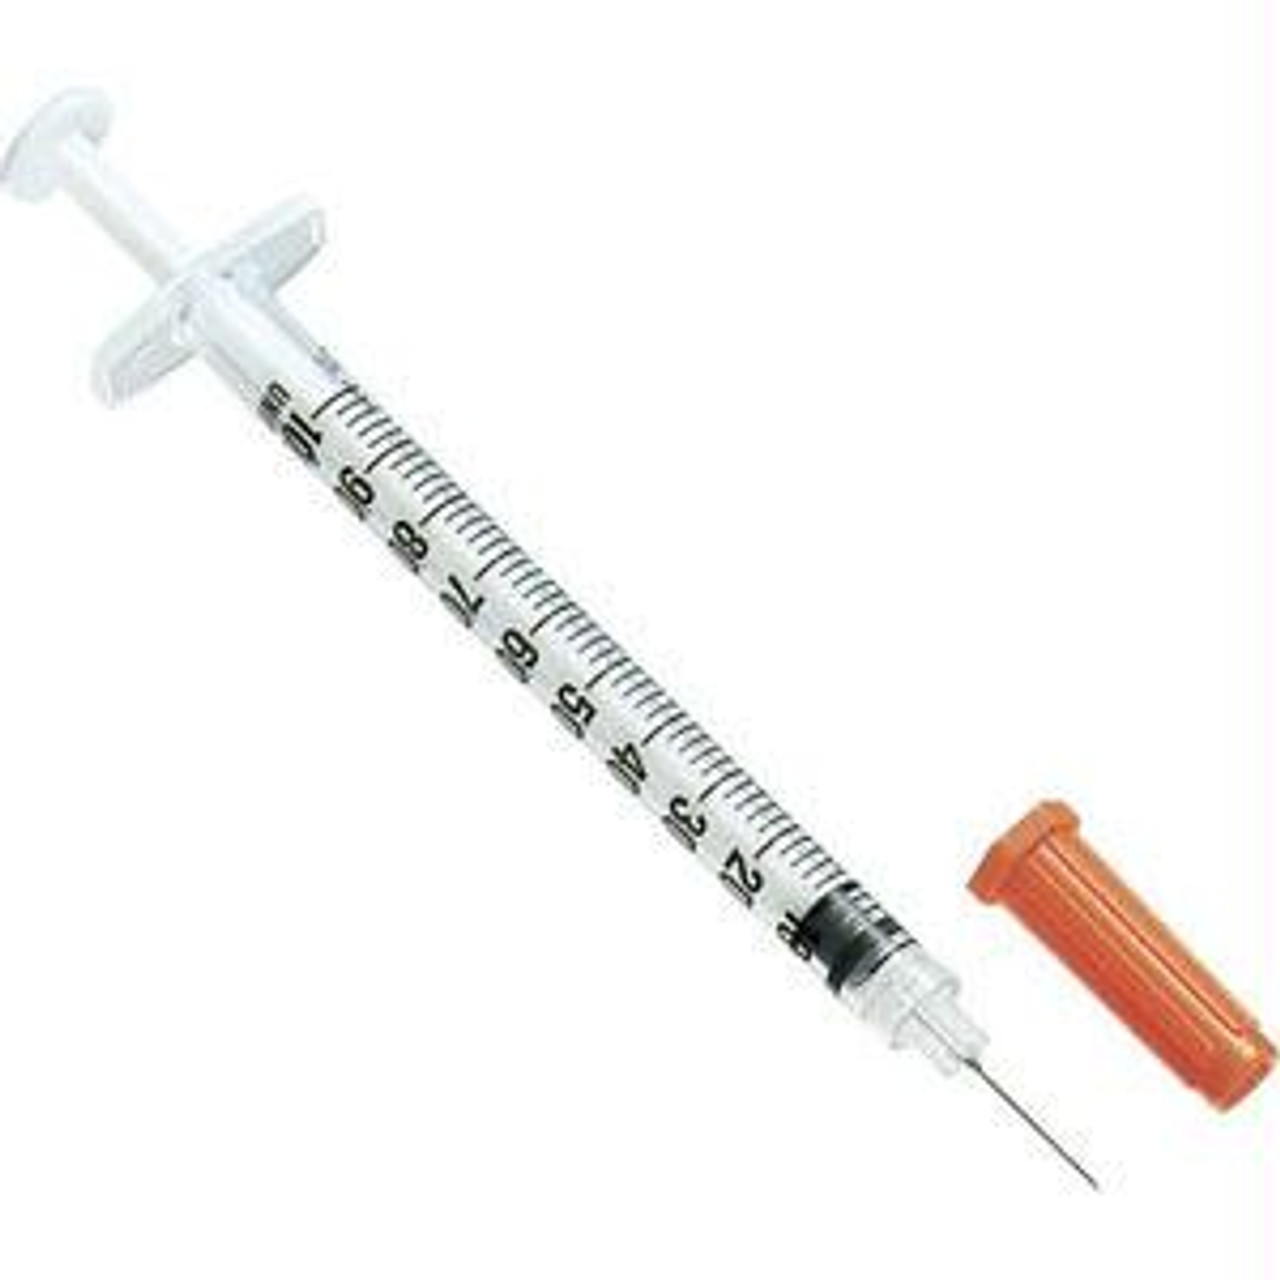 diabetic needles